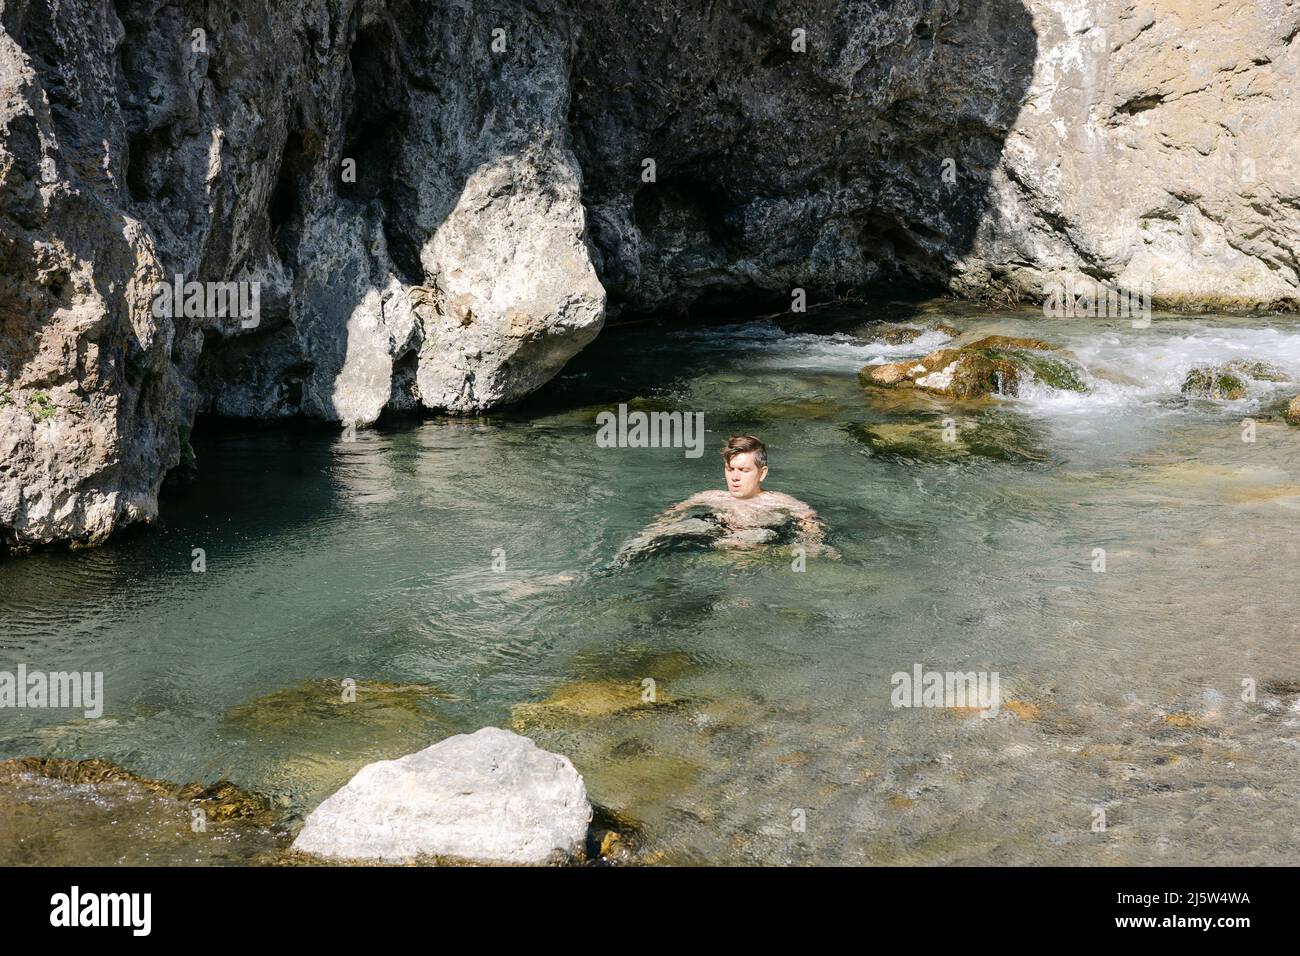 man sitting in river, Kourtaliotis Gorge,  Rethymno, Crete, greece Stock Photo